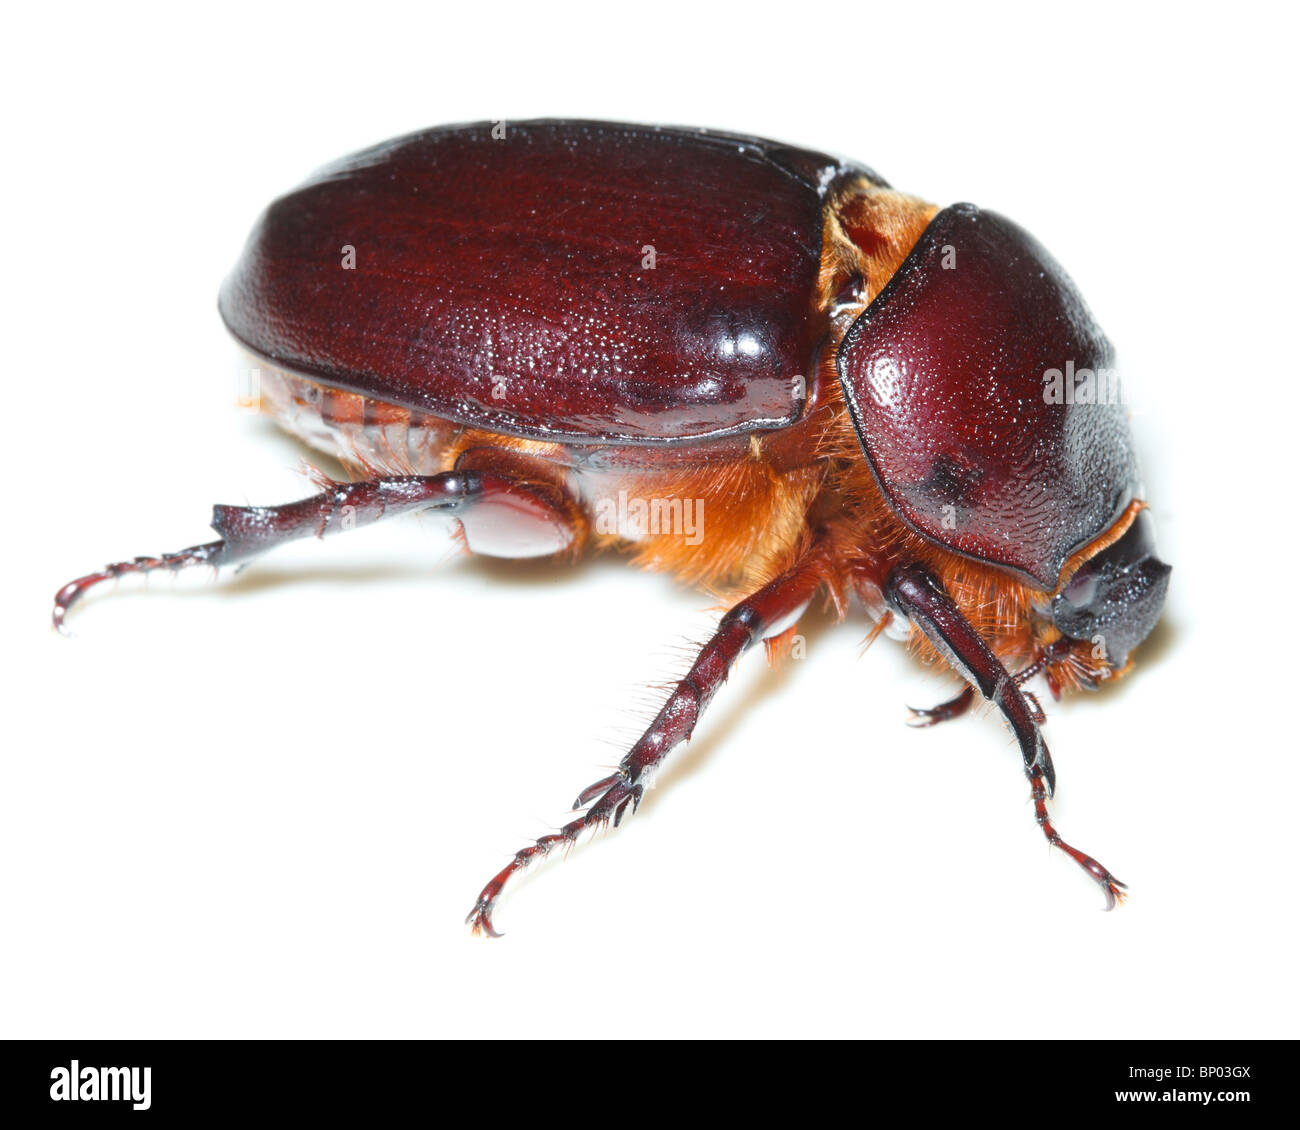 Beetle davanti a uno sfondo bianco, isolata. Foto Stock